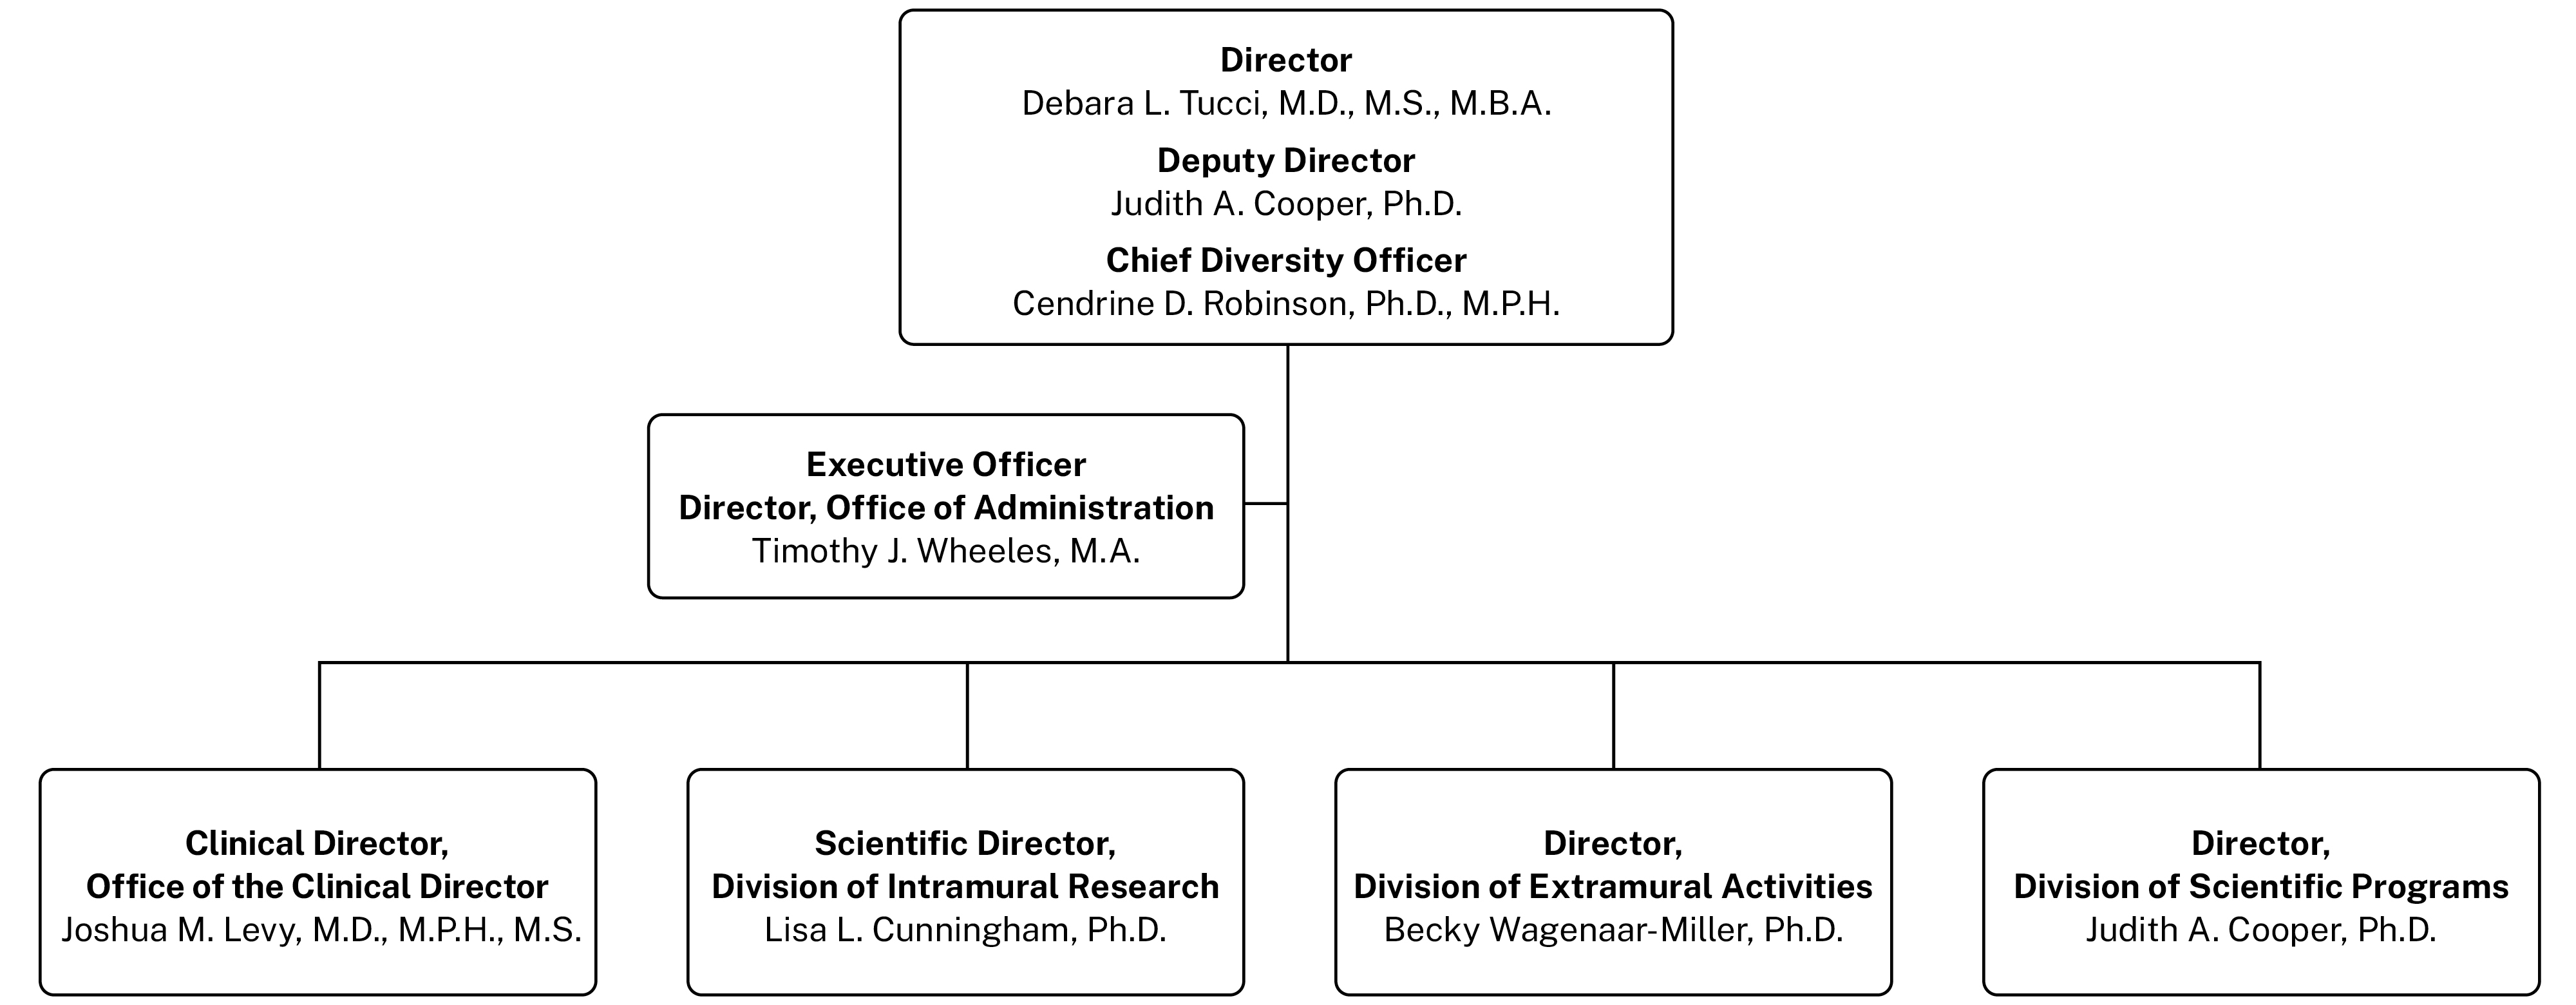 NIDCD organizational chart.